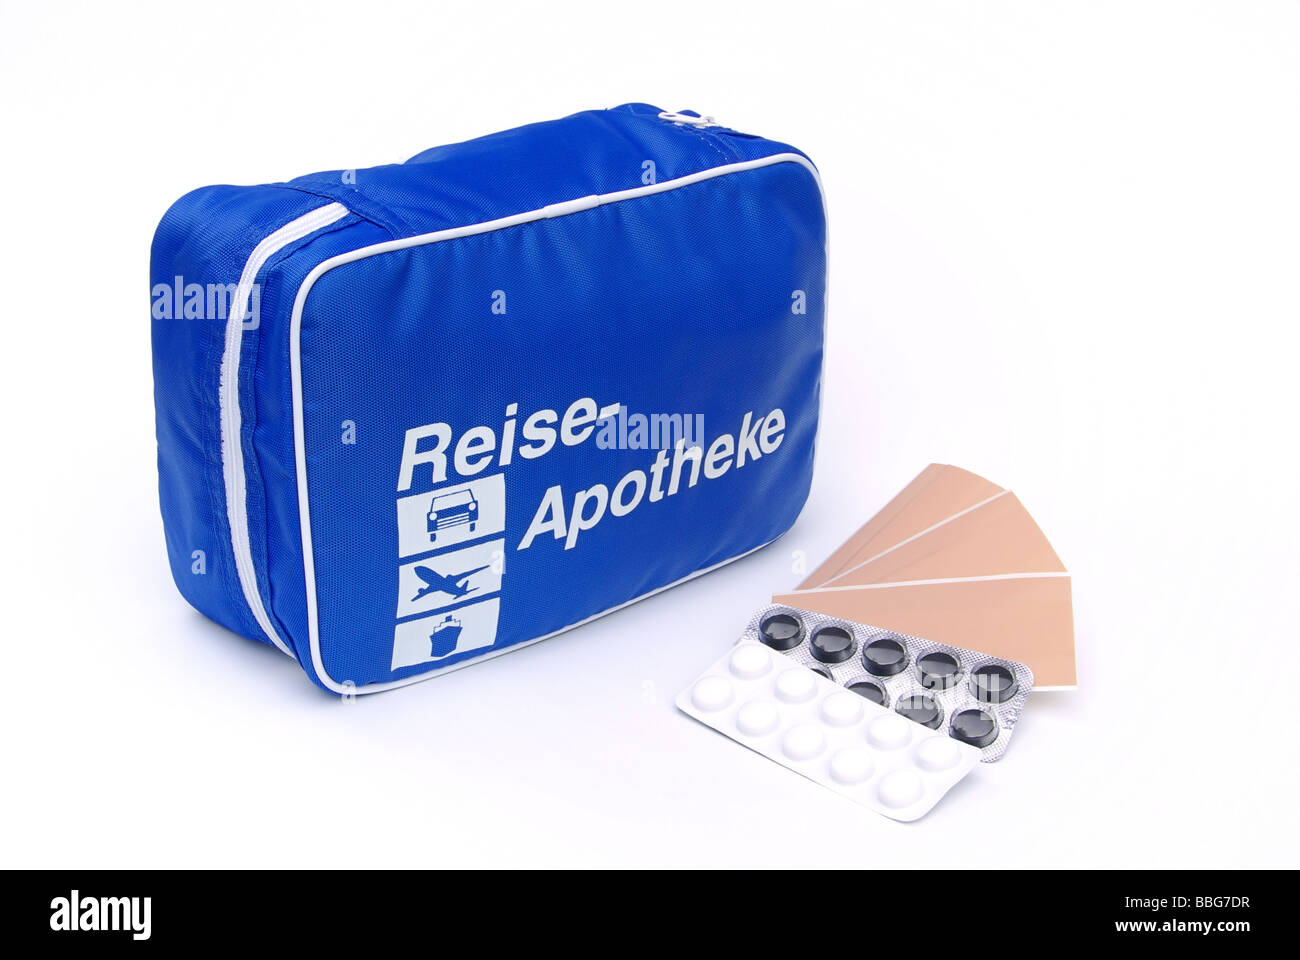 Reiseapotheke first aid travel kit 03 Stock Photo